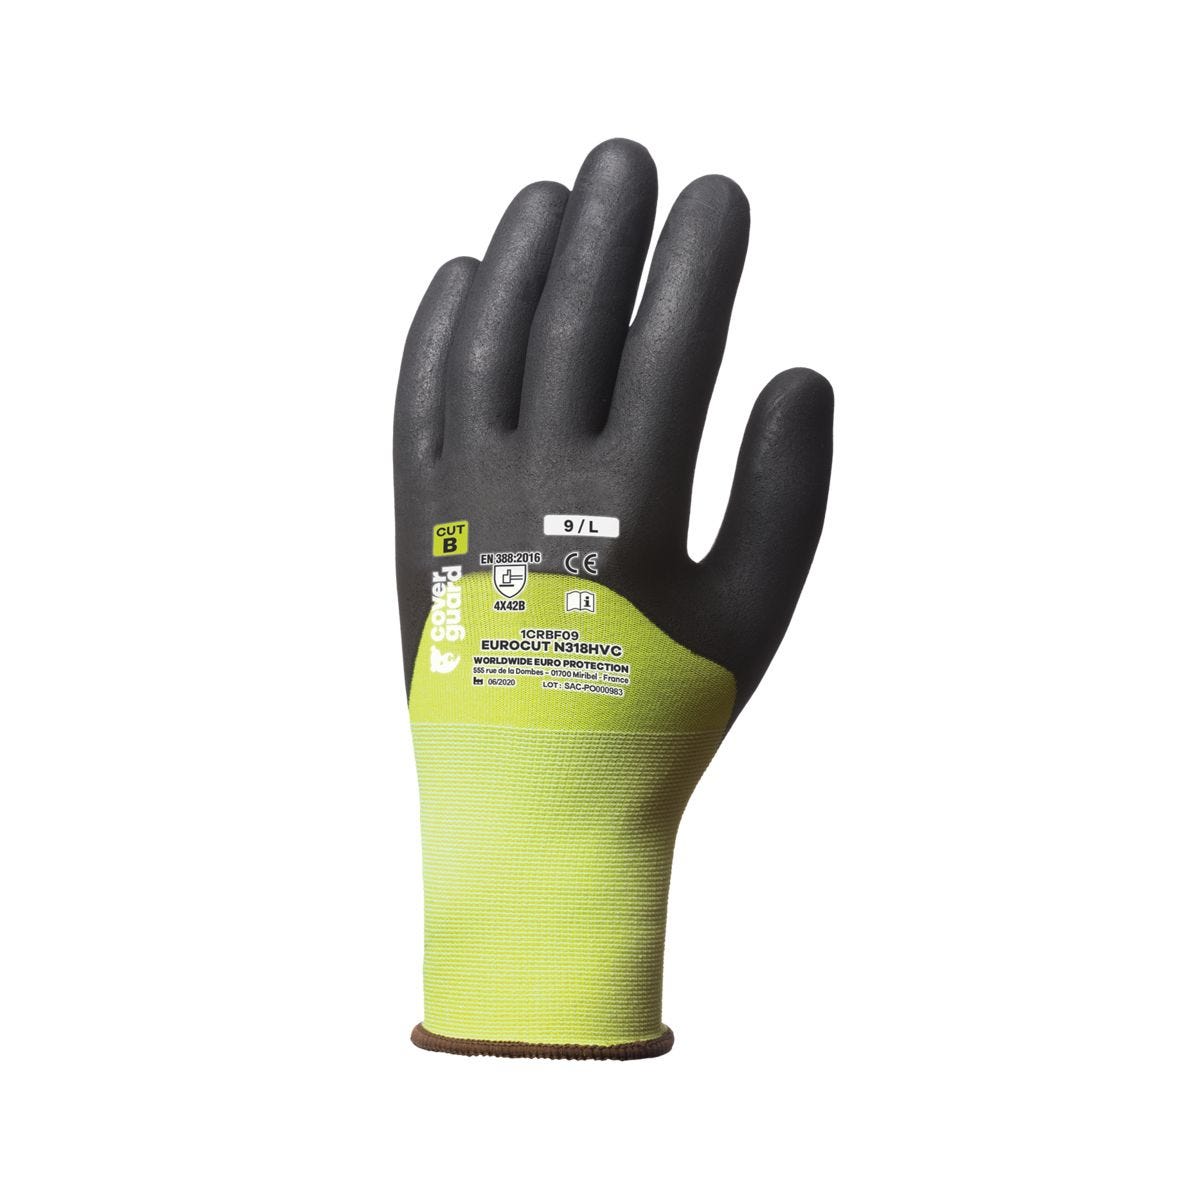 Lot de 5 gants EUROCUT N318HVC HPPE cut B 18G jaune 3/4 end.nitr. - COVERGUARD - Taille L-9 0